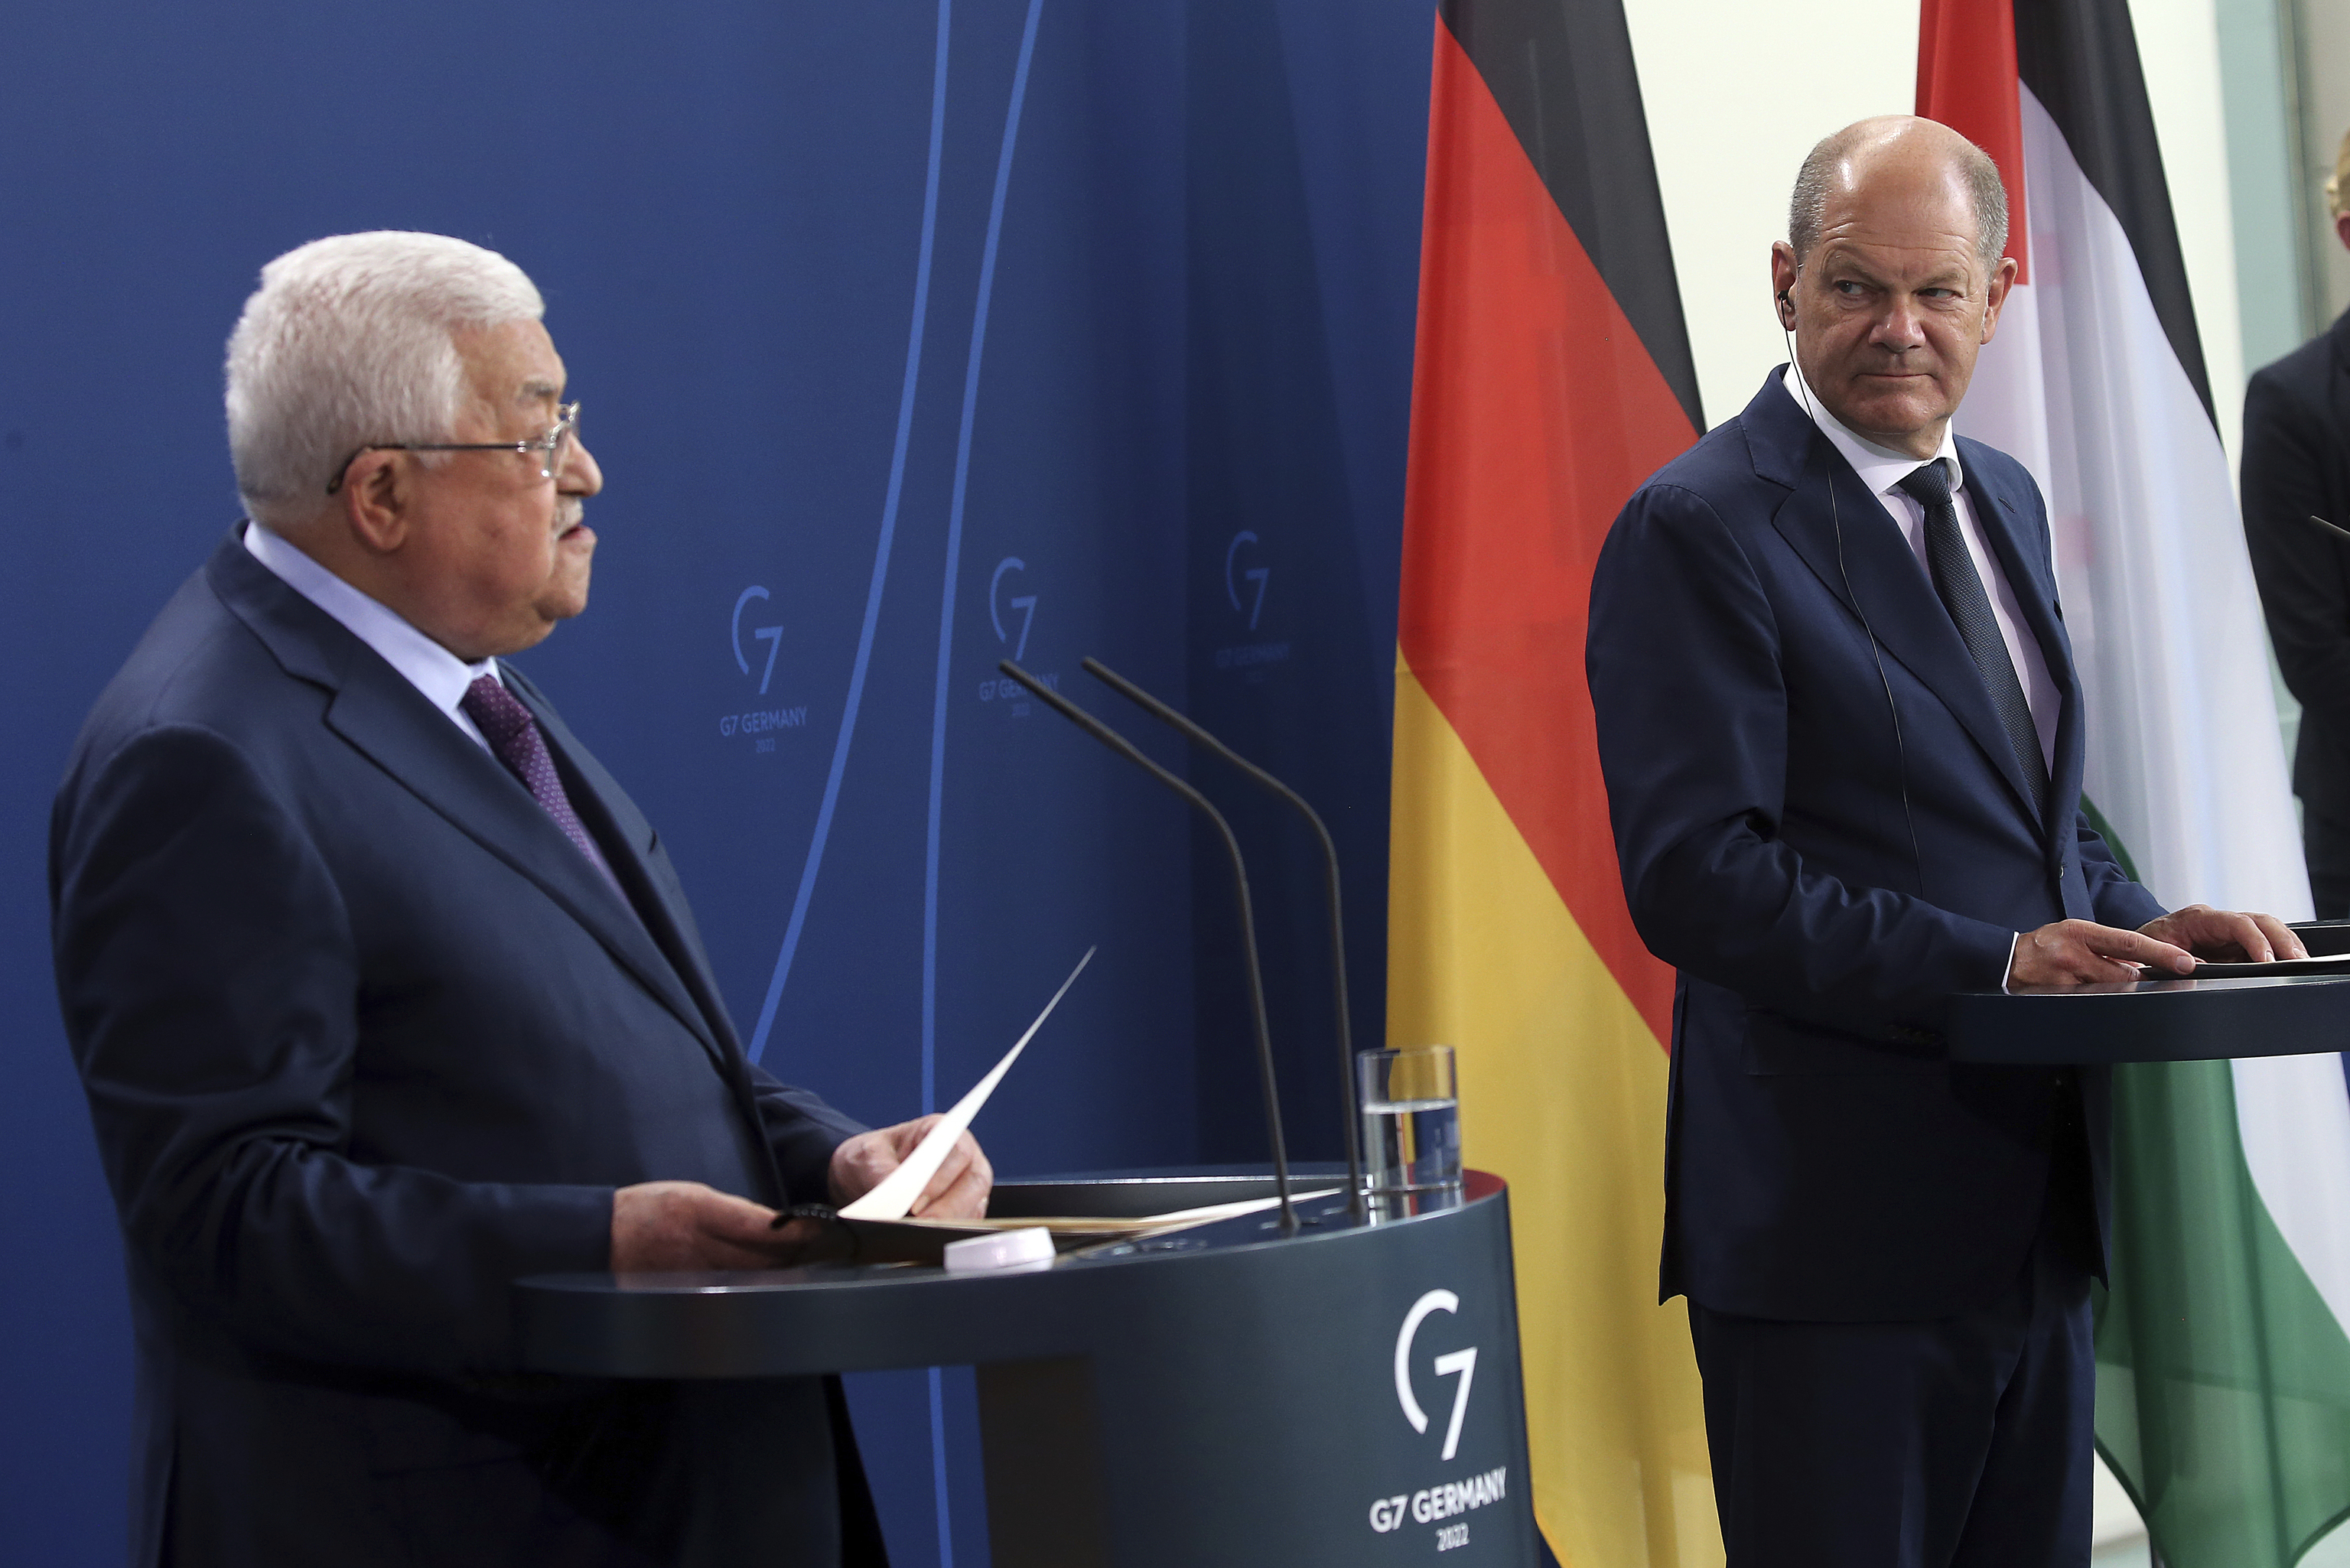 El presidente palestino, Abu Mazen (i), y el canciller alemán, Olaf Scholz (d), en rueda de prensa en Berlín, el 16 de agosto de 2022.